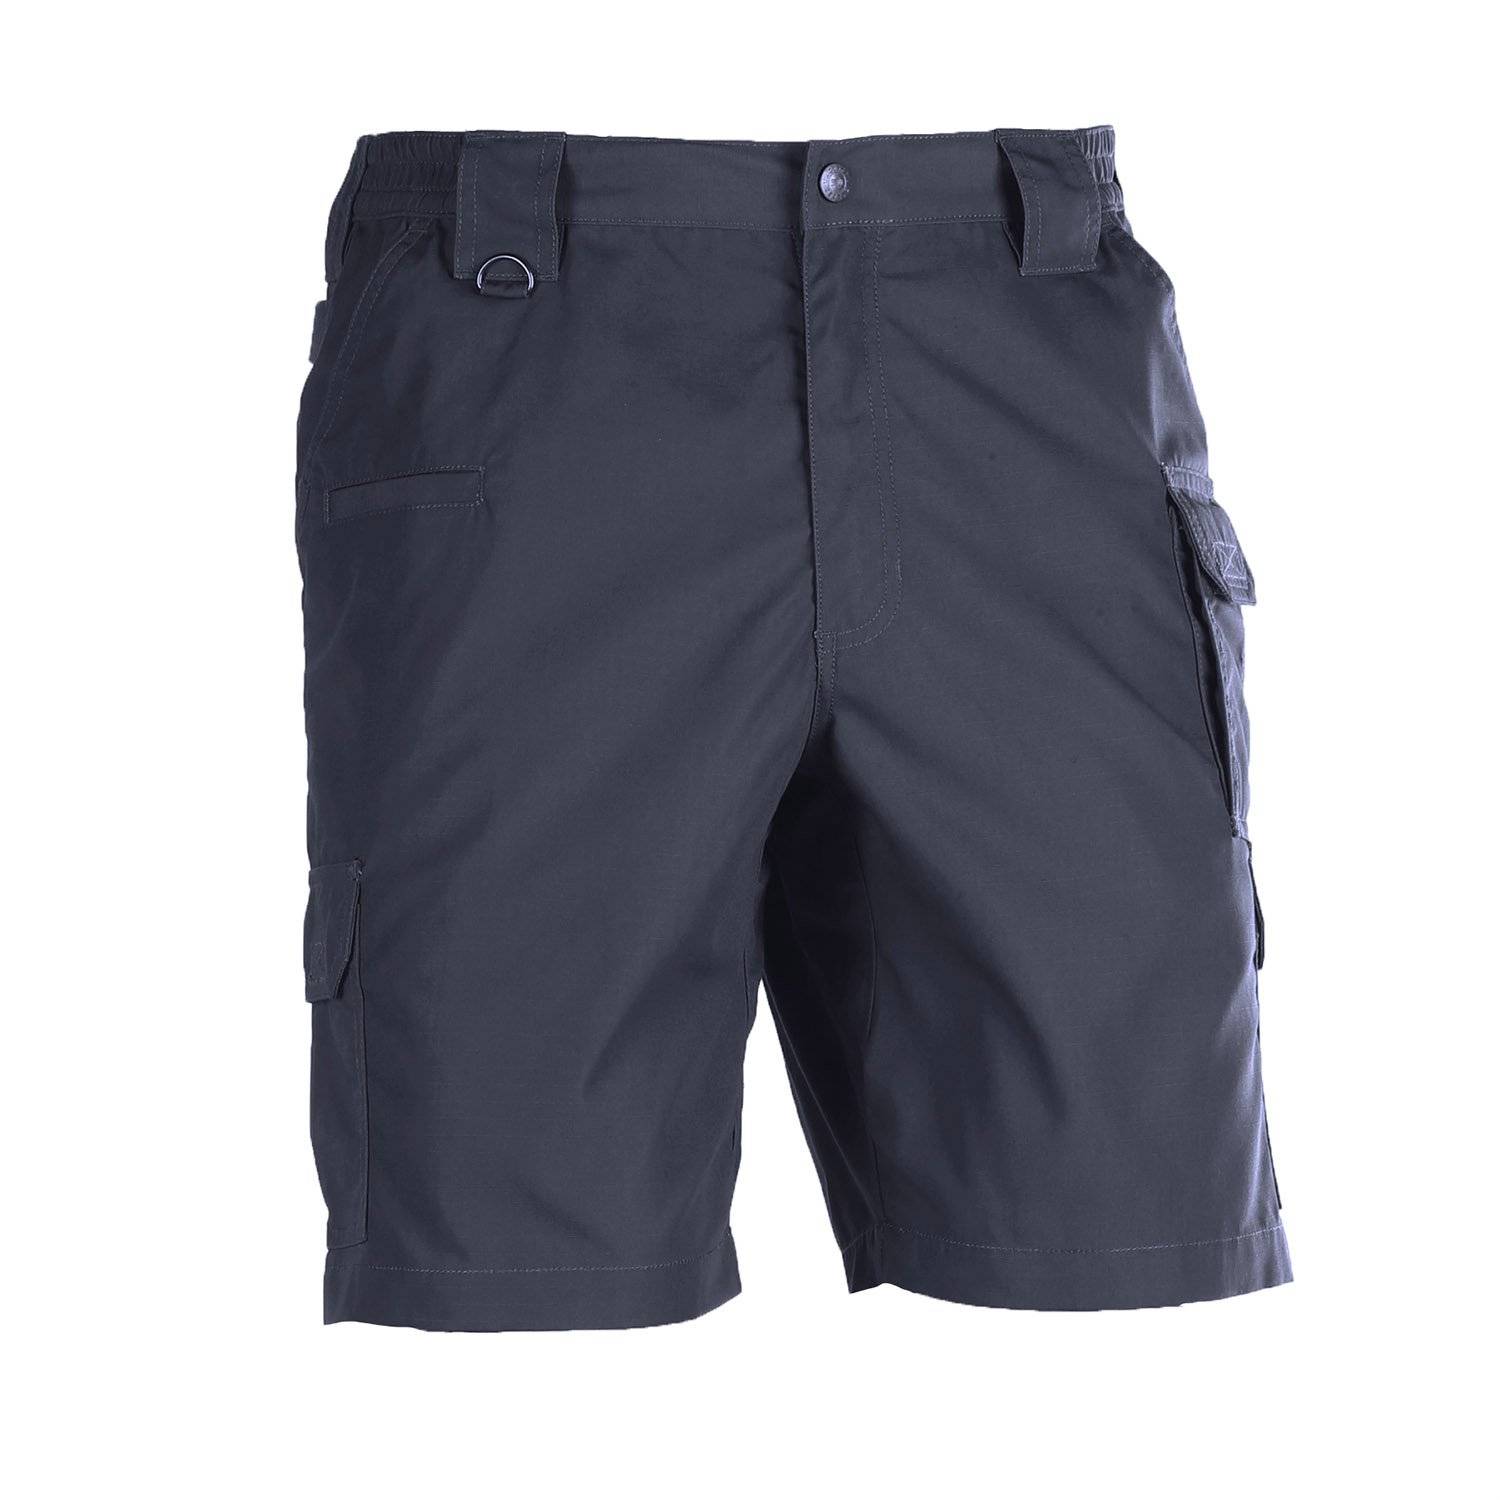 5.11 Tactical Men's TacLite Pro Shorts